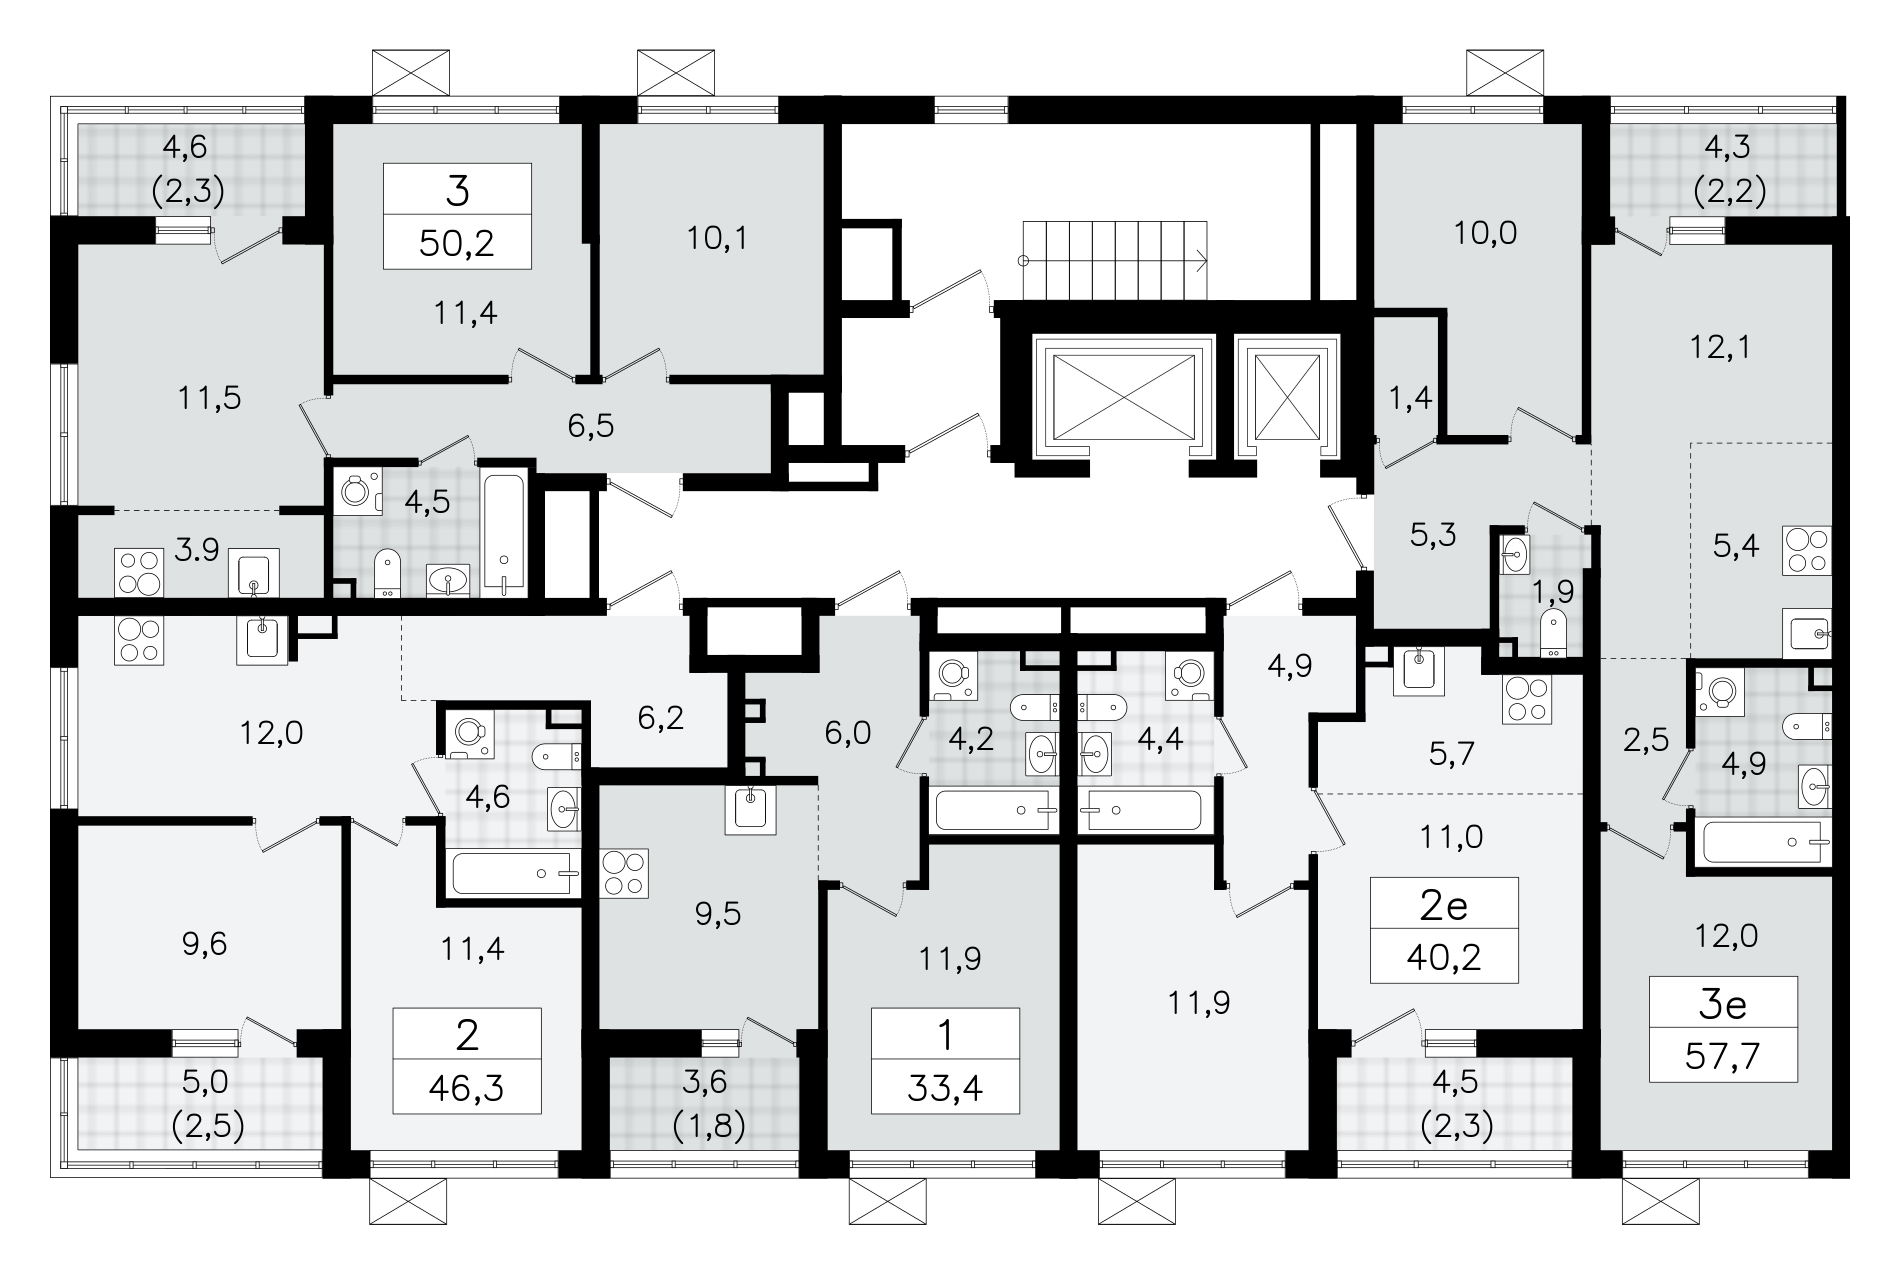 2-комнатная (Евро) квартира, 40.2 м² в ЖК "А101 Всеволожск" - планировка этажа